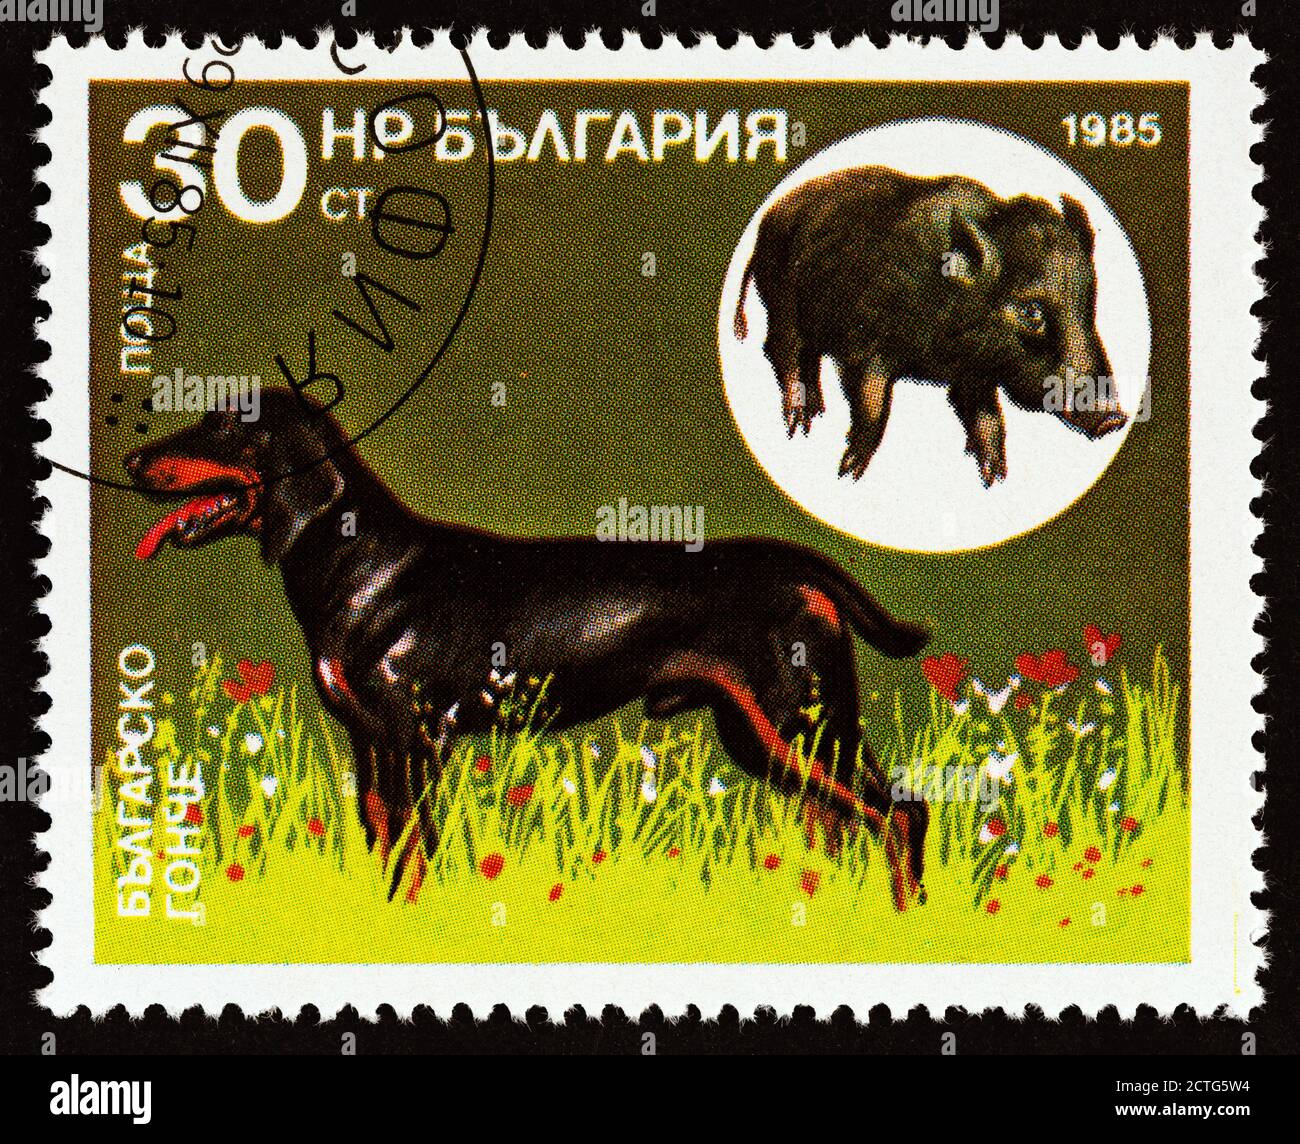 BULGARIEN - UM 1985: Eine in Bulgarien gedruckte Briefmarke aus der Ausgabe 'Jagdhunde' zeigt bulgarischen Szenehund, Wildschwein (Sus scrofa) Stockfoto